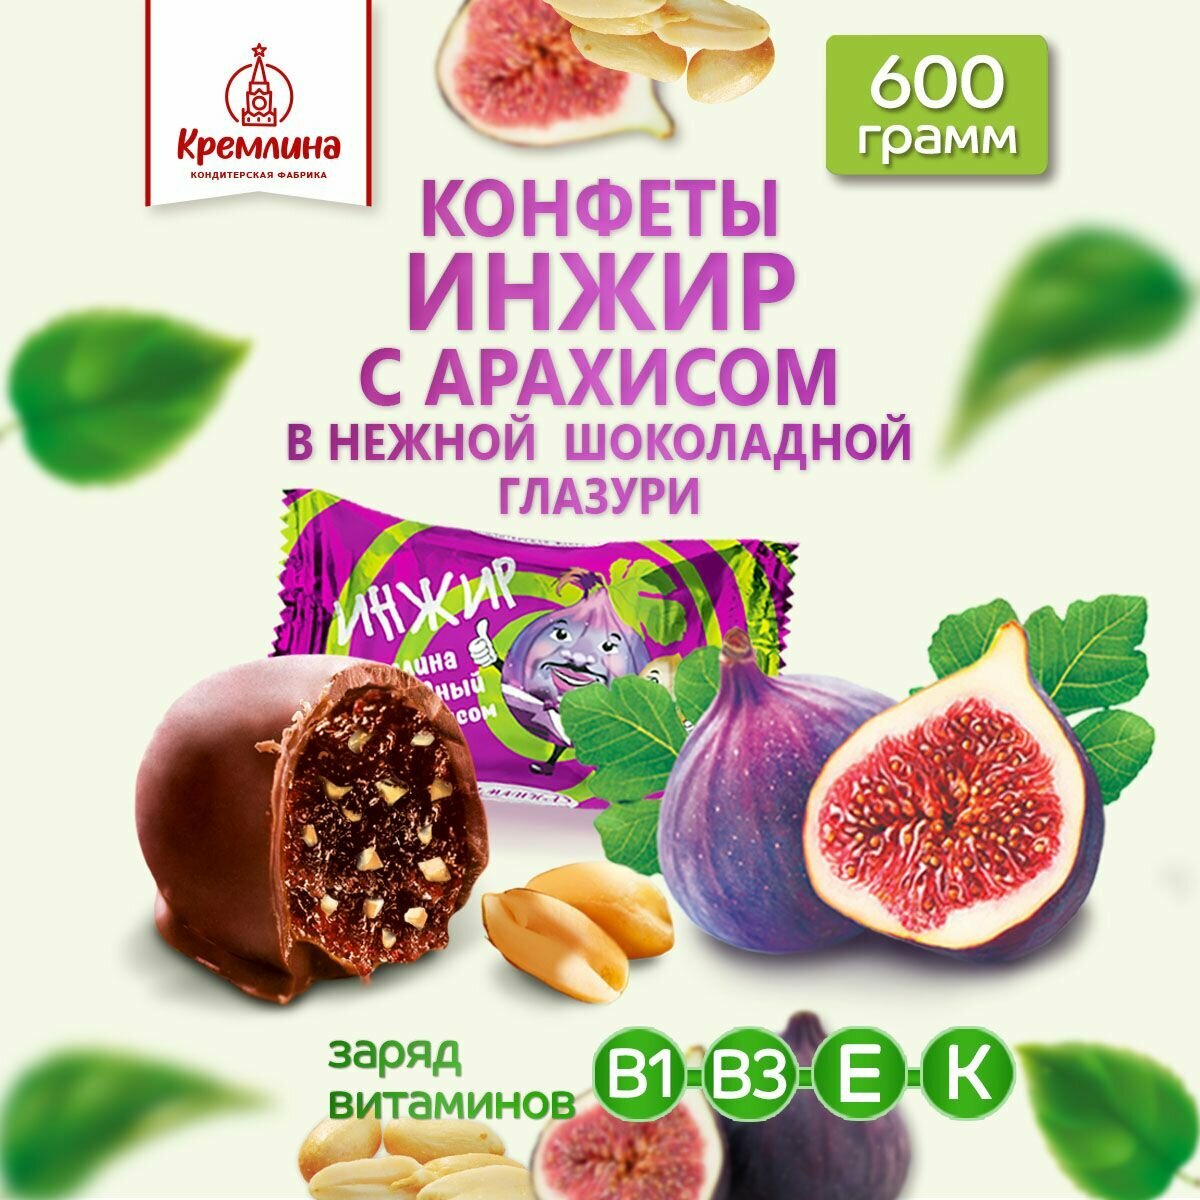 Конфеты Инжир Шоколадный с Арахисом, пакет 600 гр